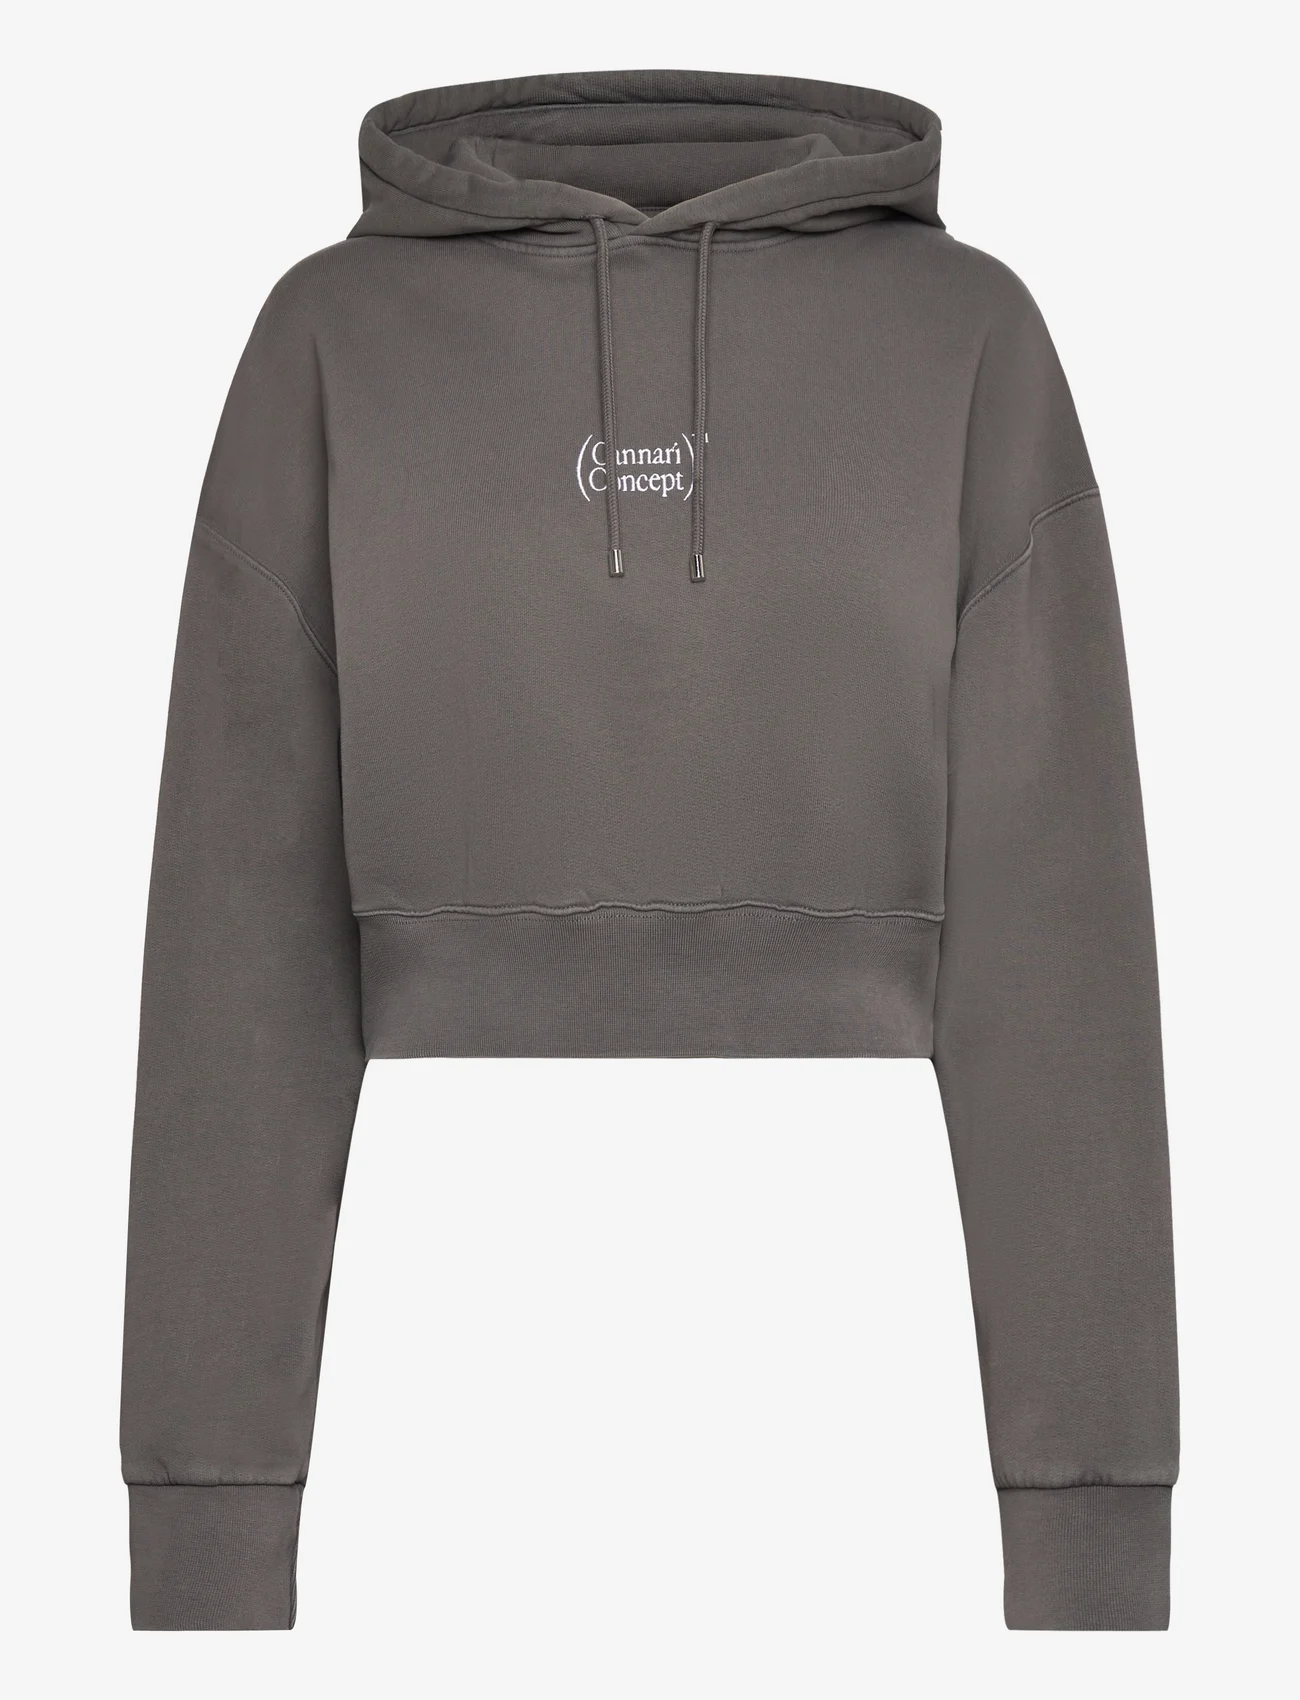 Cannari Concept - SARIAH HOODIE PRINT - sweatshirts & hoodies - asphalt - 0